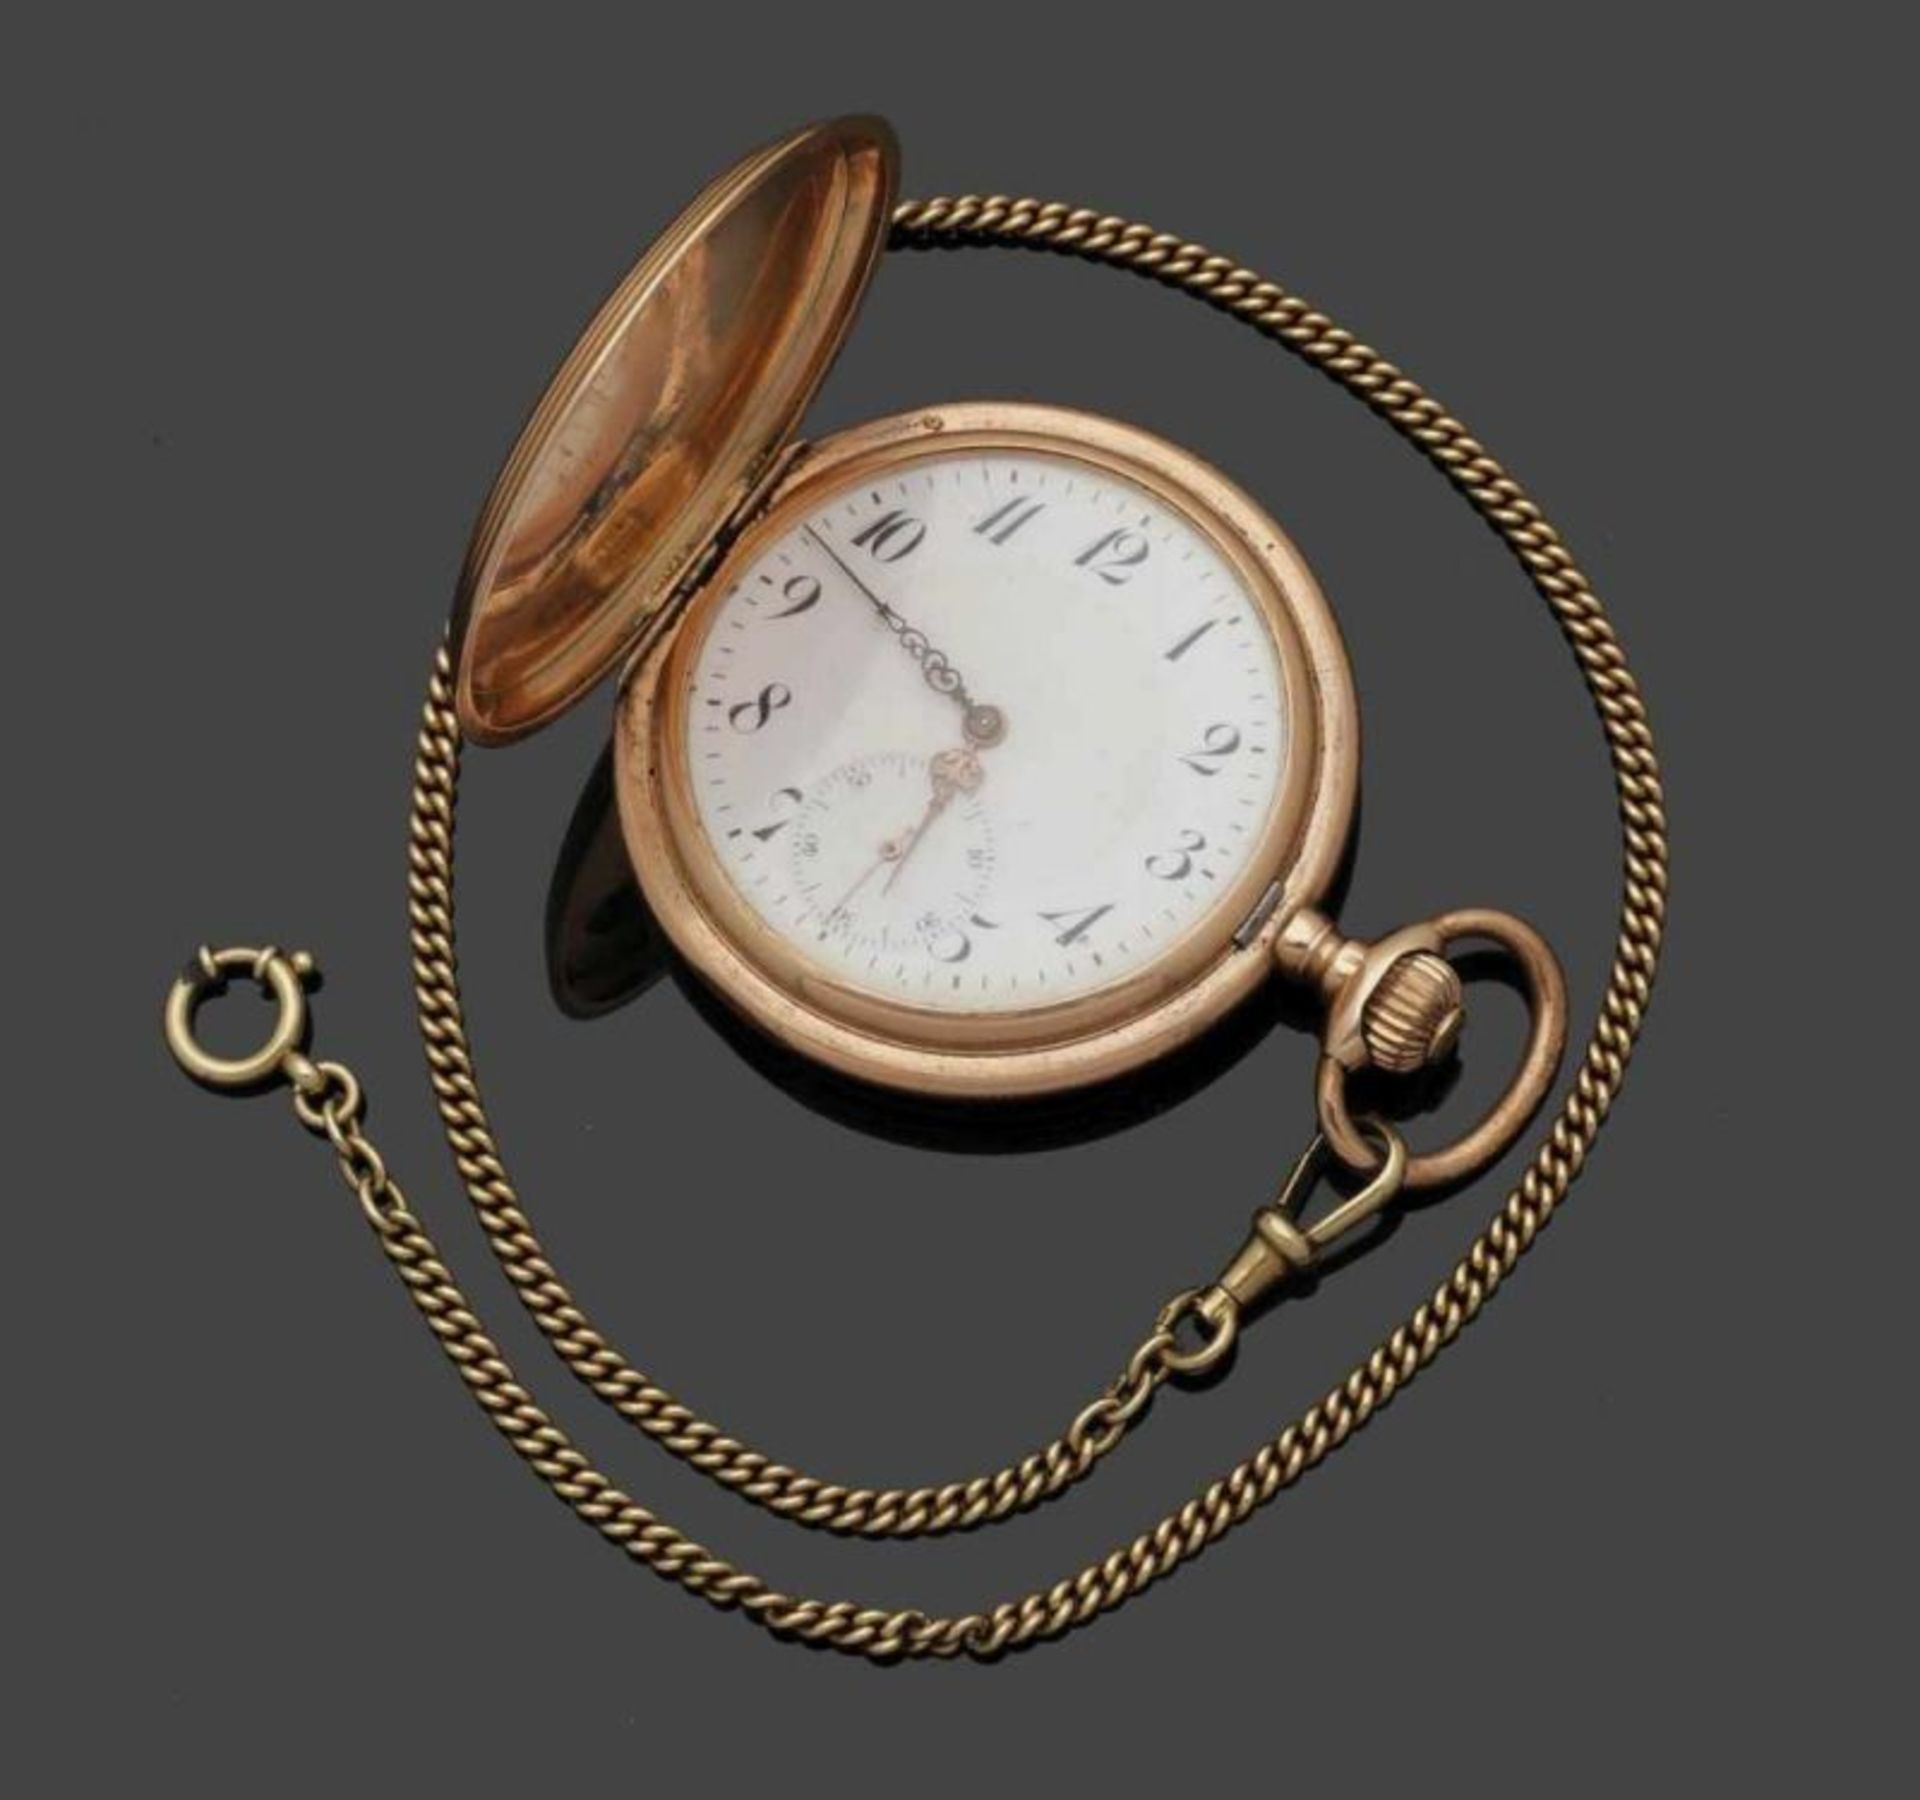 Savonette mit Uhrenkette Fa. Philippe Dubois & Fils, Schweiz. Savonette: 585er Roségold, gestemp. - Bild 3 aus 4